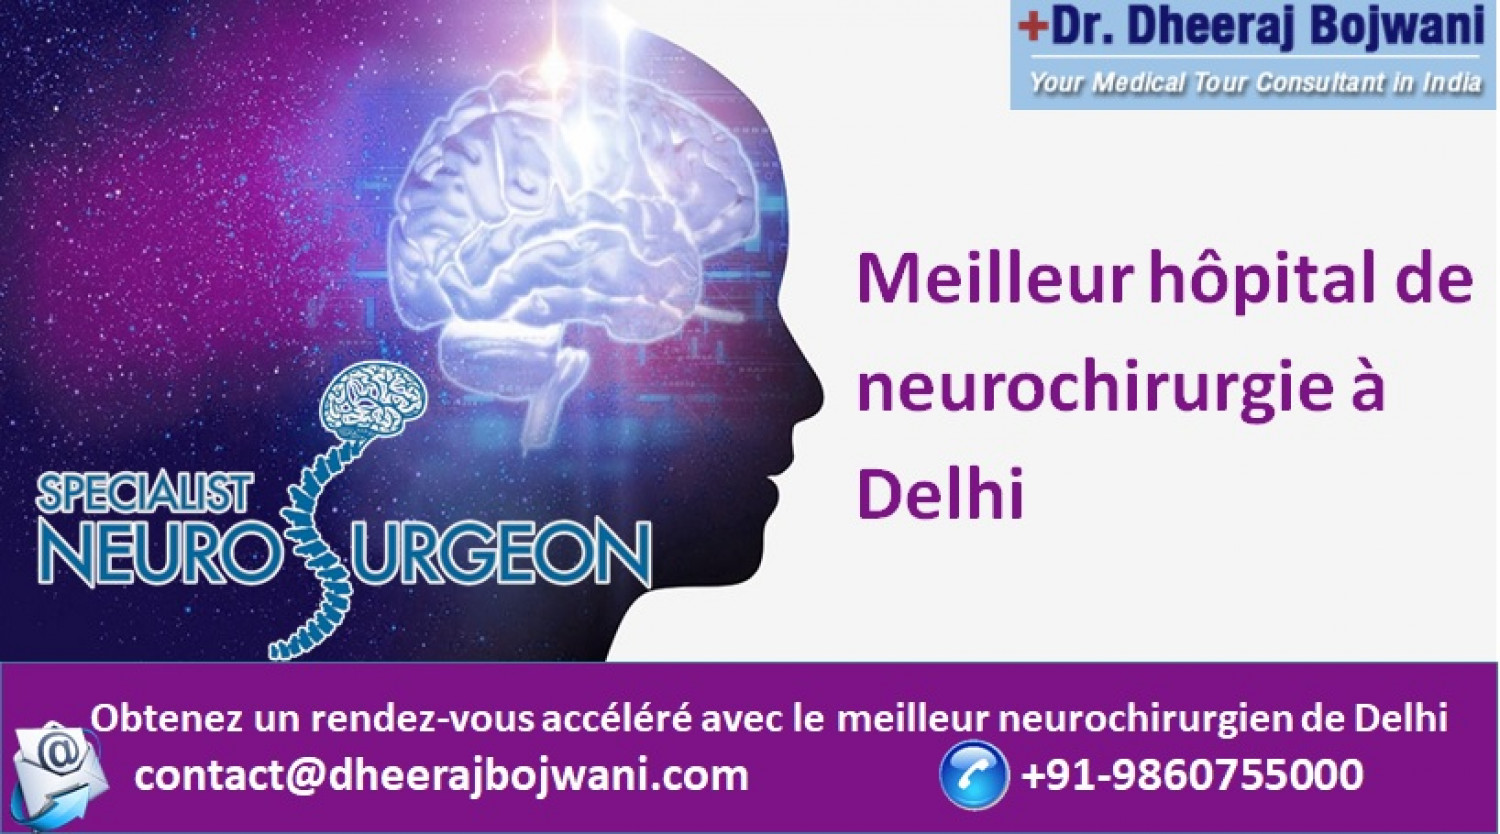 Recevez une neurochirurgie vitale au meilleur hôpital de neurochirurgie de Delhi Infographic